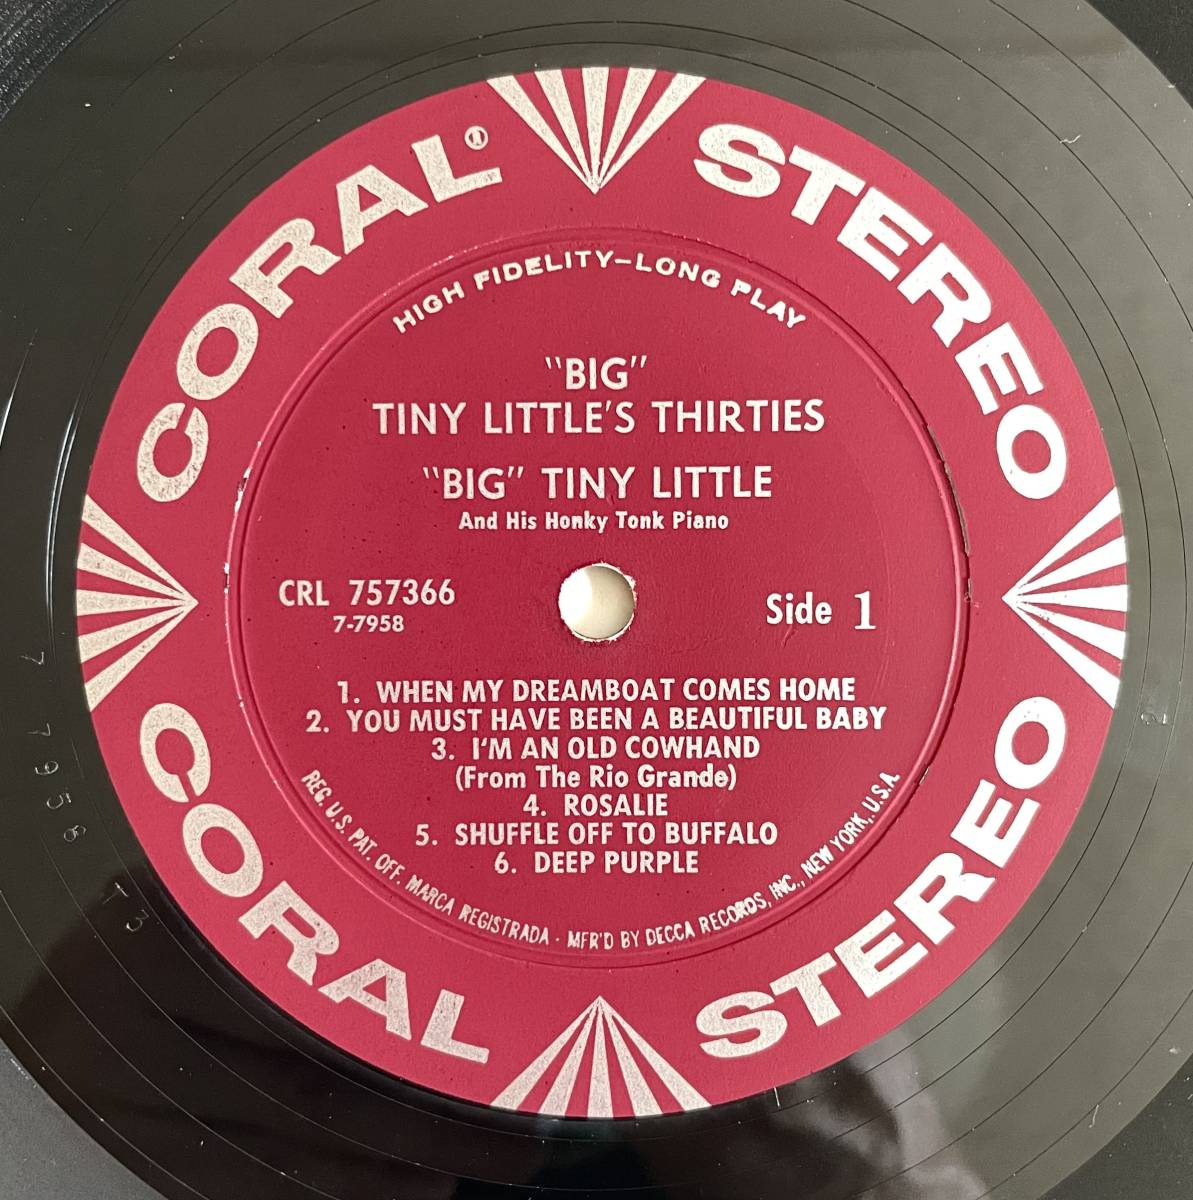 BIG TINY LITTLE'S THIRTIES 米盤オリジナル STEREO CORAL CRL-75366 LPレコード 1961年★US ビッグ・タイニー・リトル ラグタイム・ピアノ_画像5